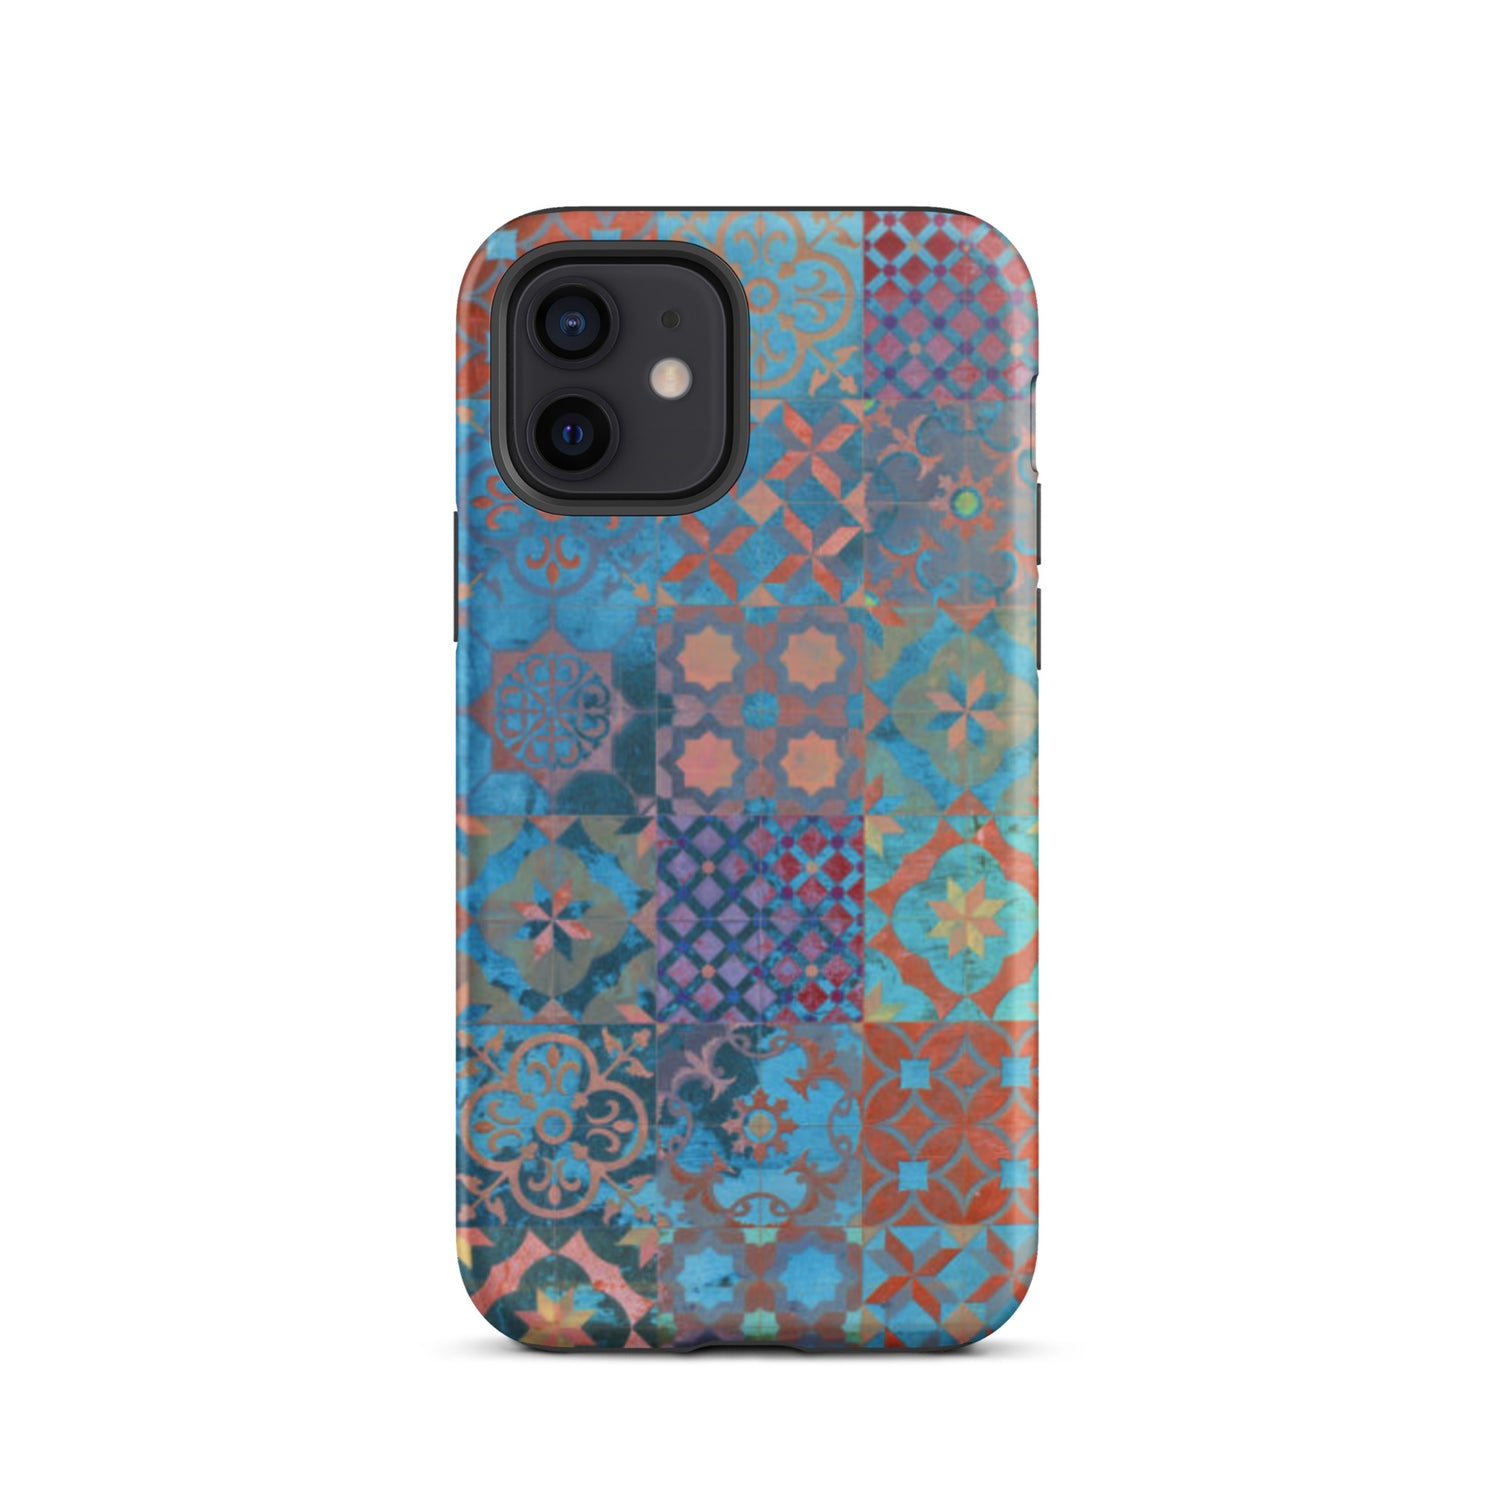 Moroccan Tile Tough iPhone 12 case